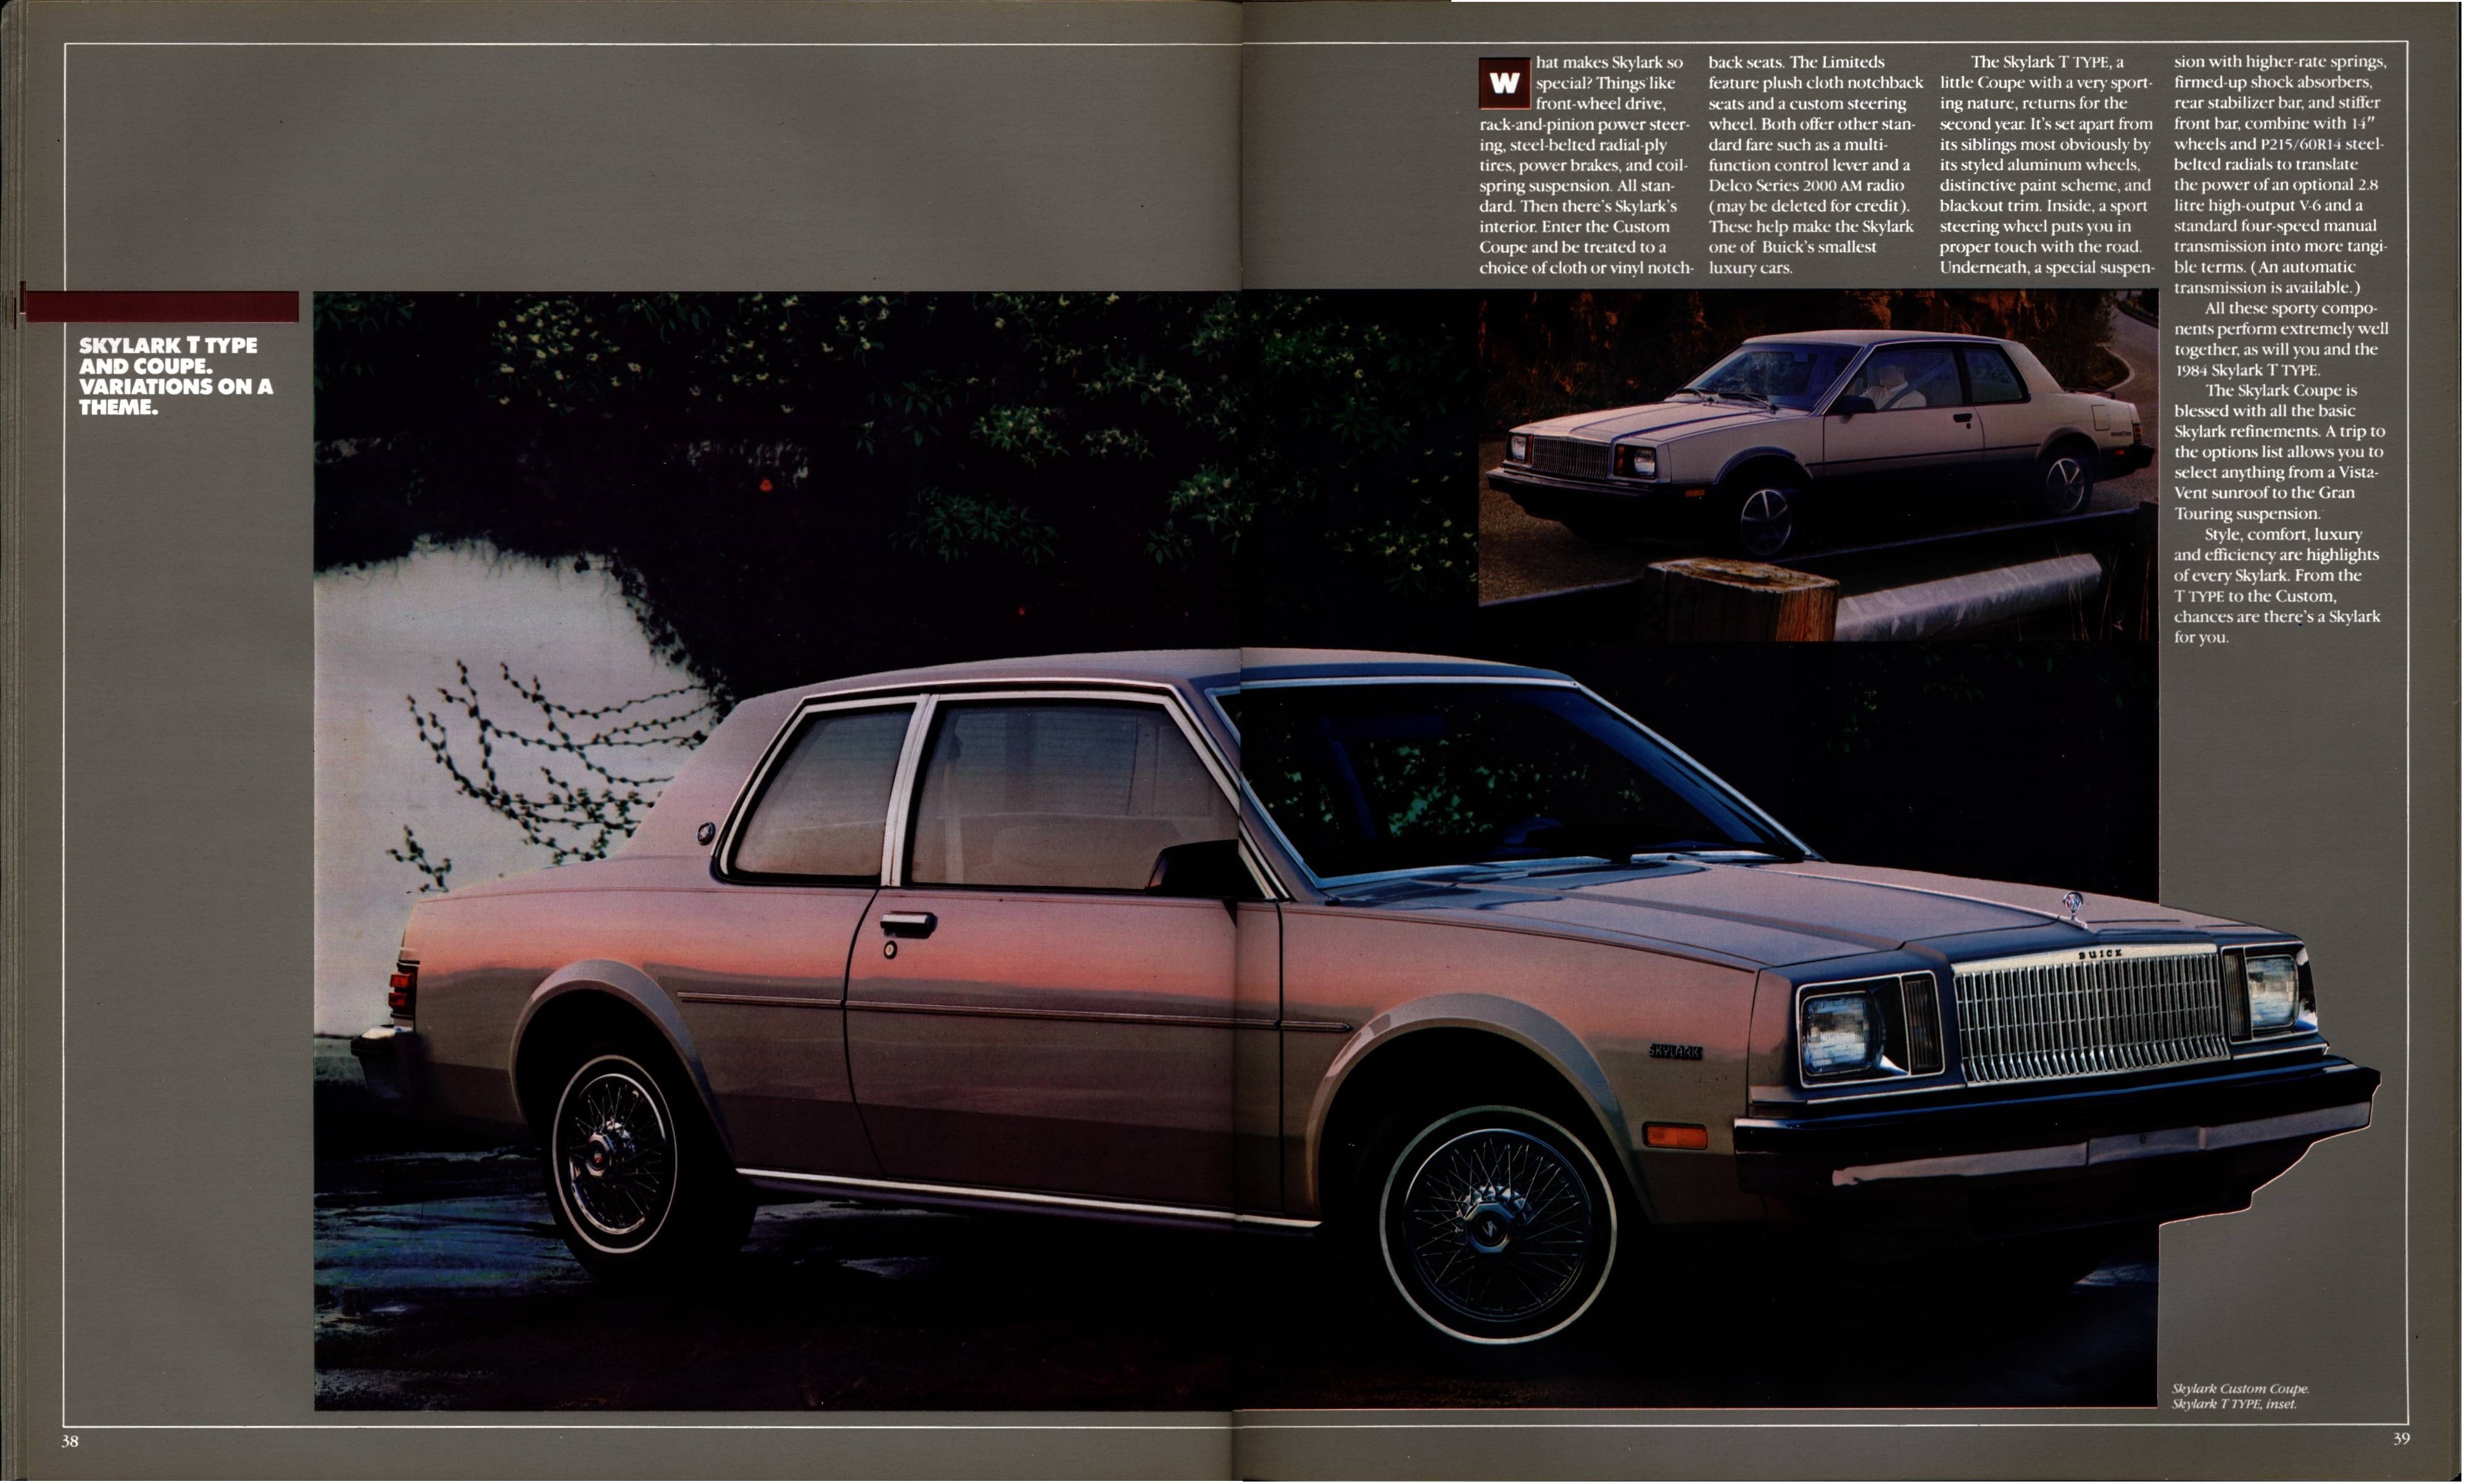 1984 Buick Full Line Prestige 38-39